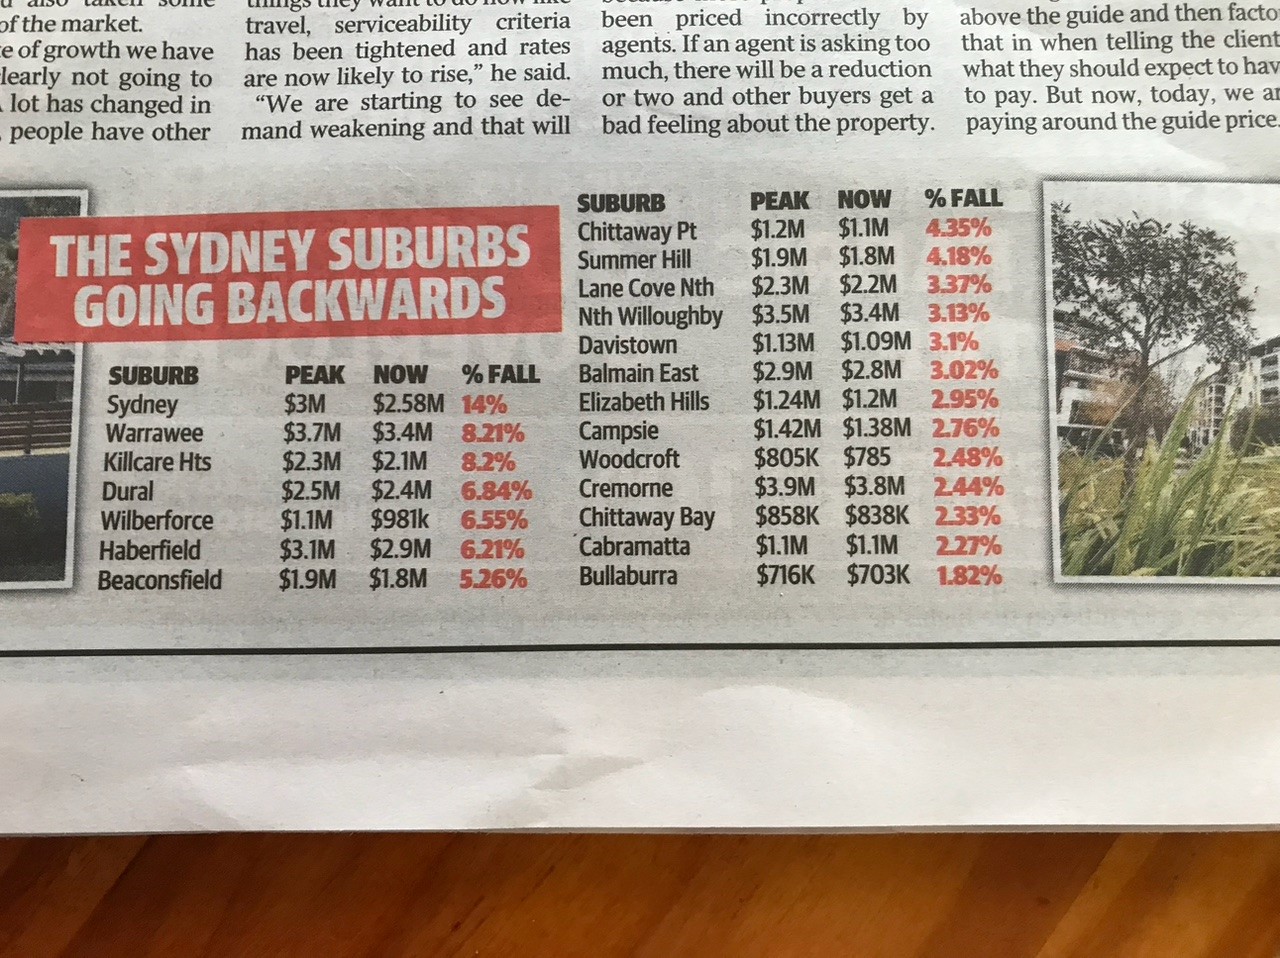 Sydney House Prices